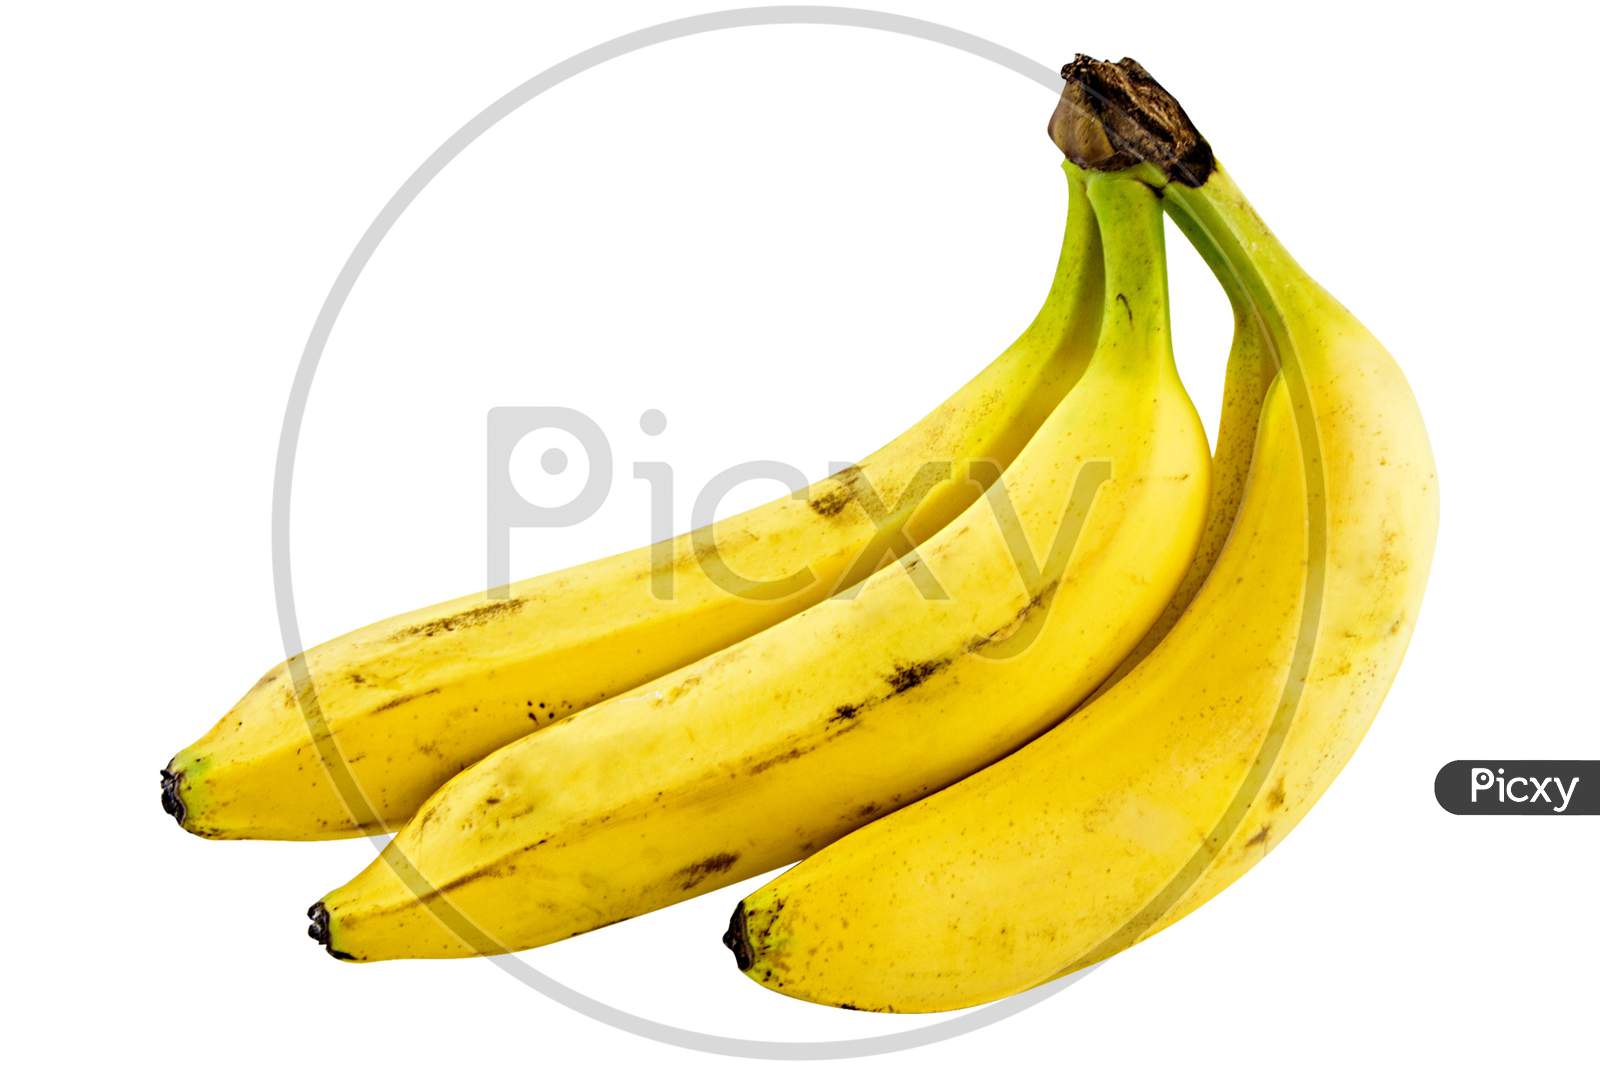 ripe banana isolated on white background.